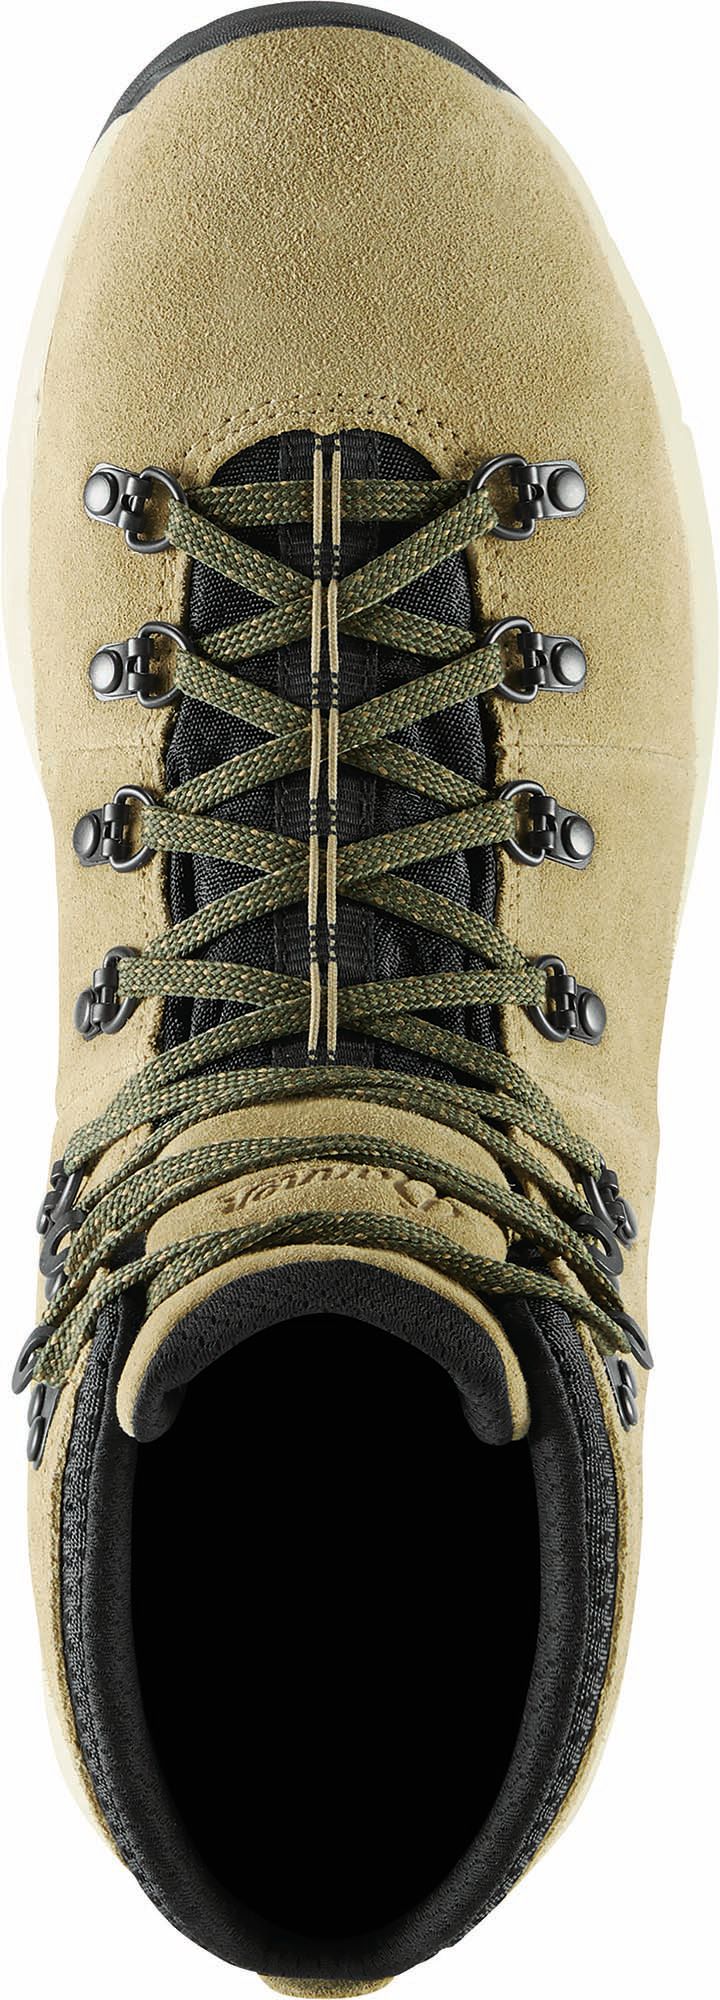 Danner Men's Mountain 600 4.5" Waterproof Hiking Boots